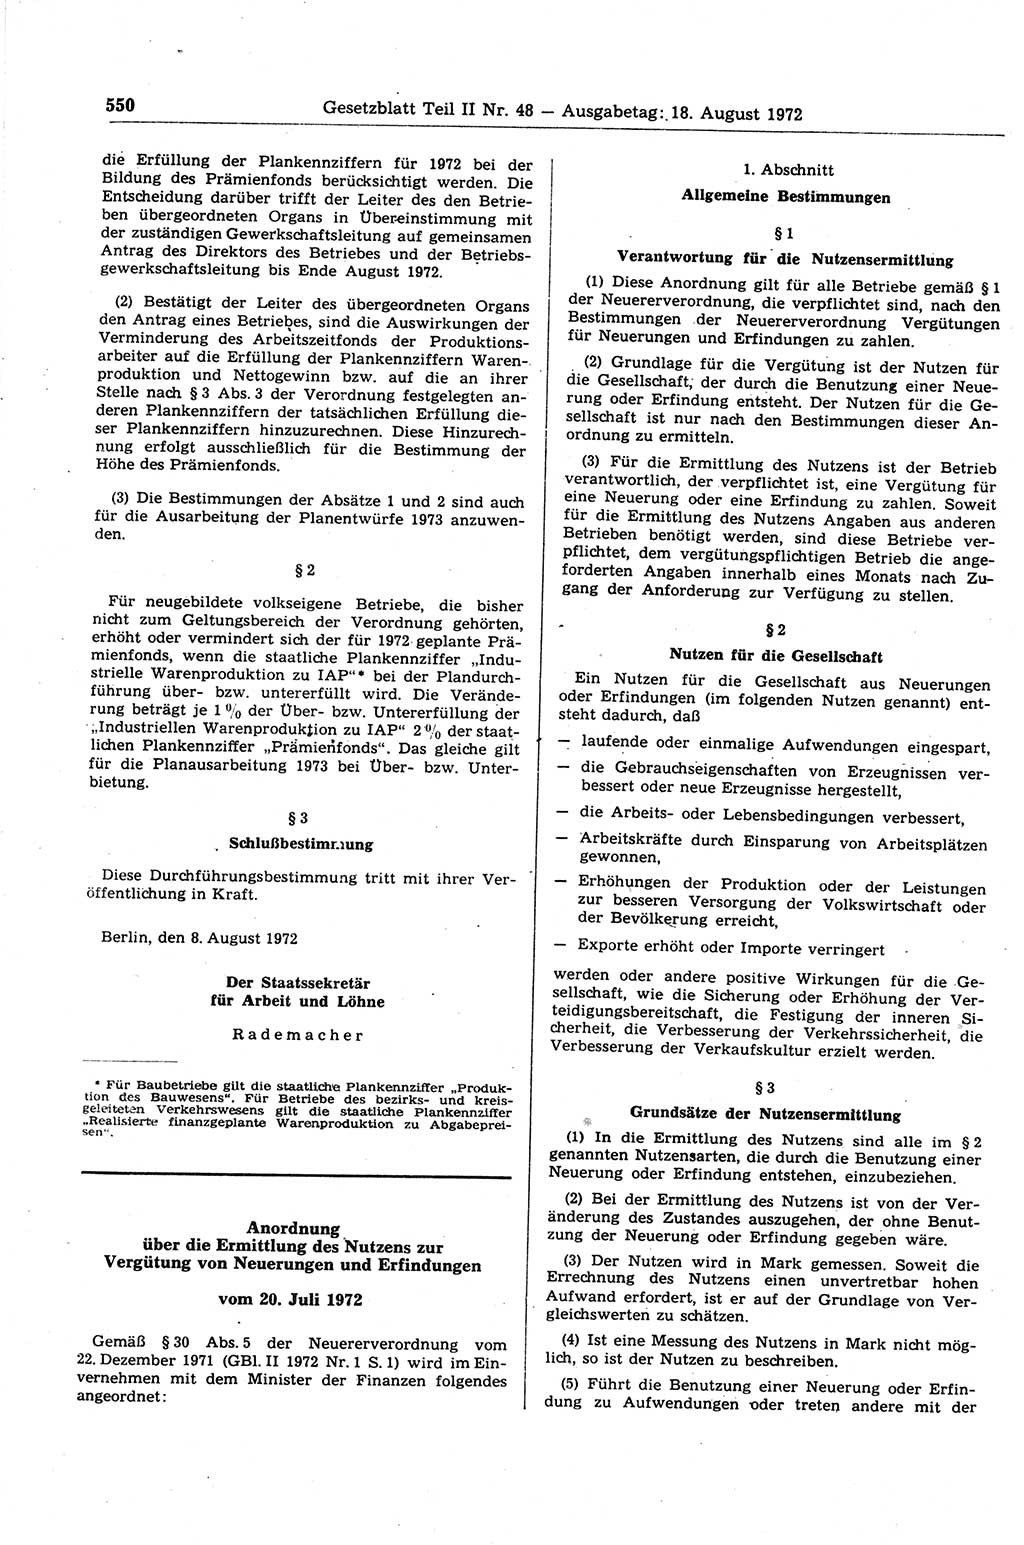 Gesetzblatt (GBl.) der Deutschen Demokratischen Republik (DDR) Teil ⅠⅠ 1972, Seite 550 (GBl. DDR ⅠⅠ 1972, S. 550)